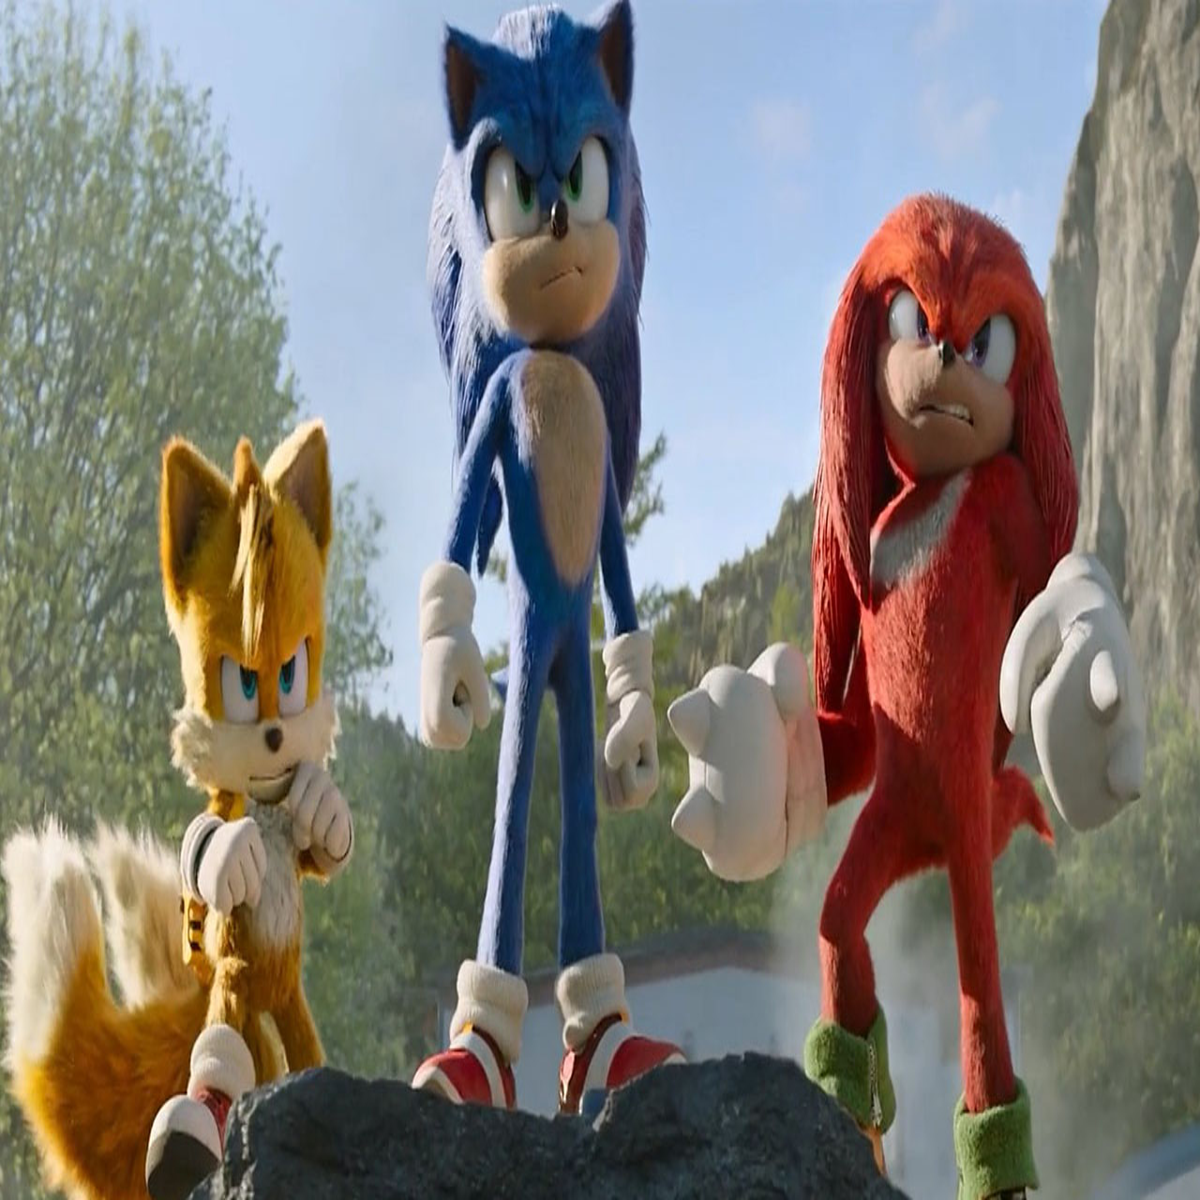 Sonic - O Filme 3 previsto para 2024 e terá uma figura bem conhecida